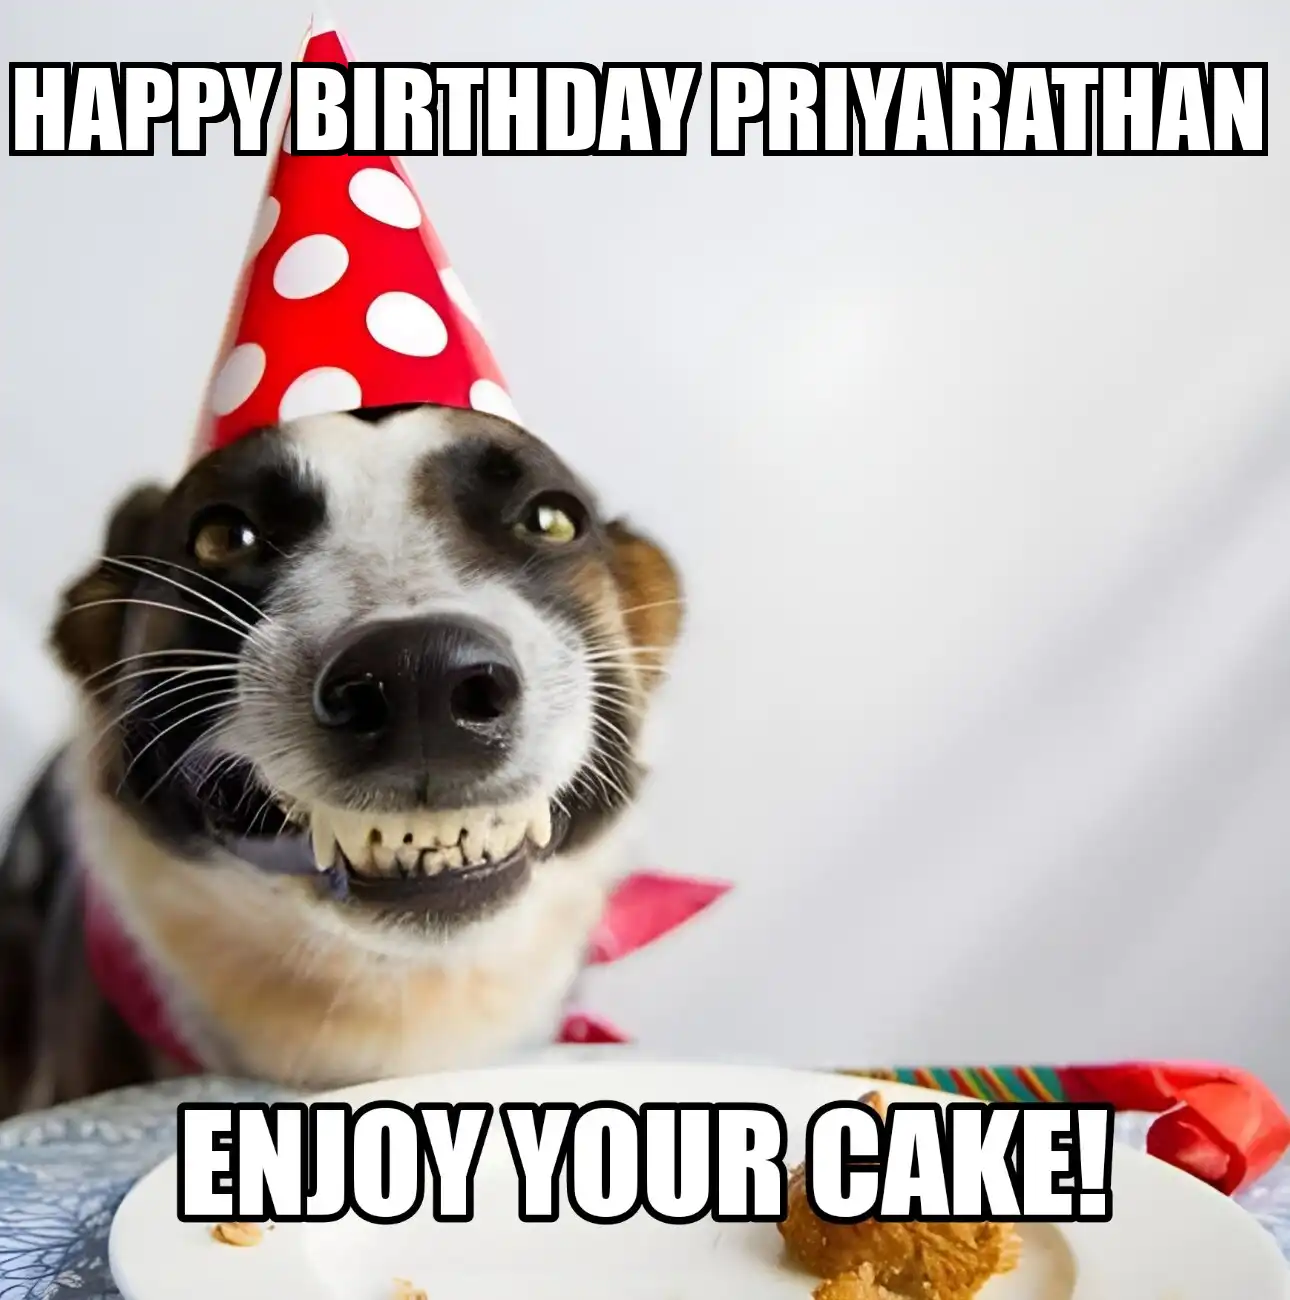 Happy Birthday Priyarathan Enjoy Your Cake Dog Meme